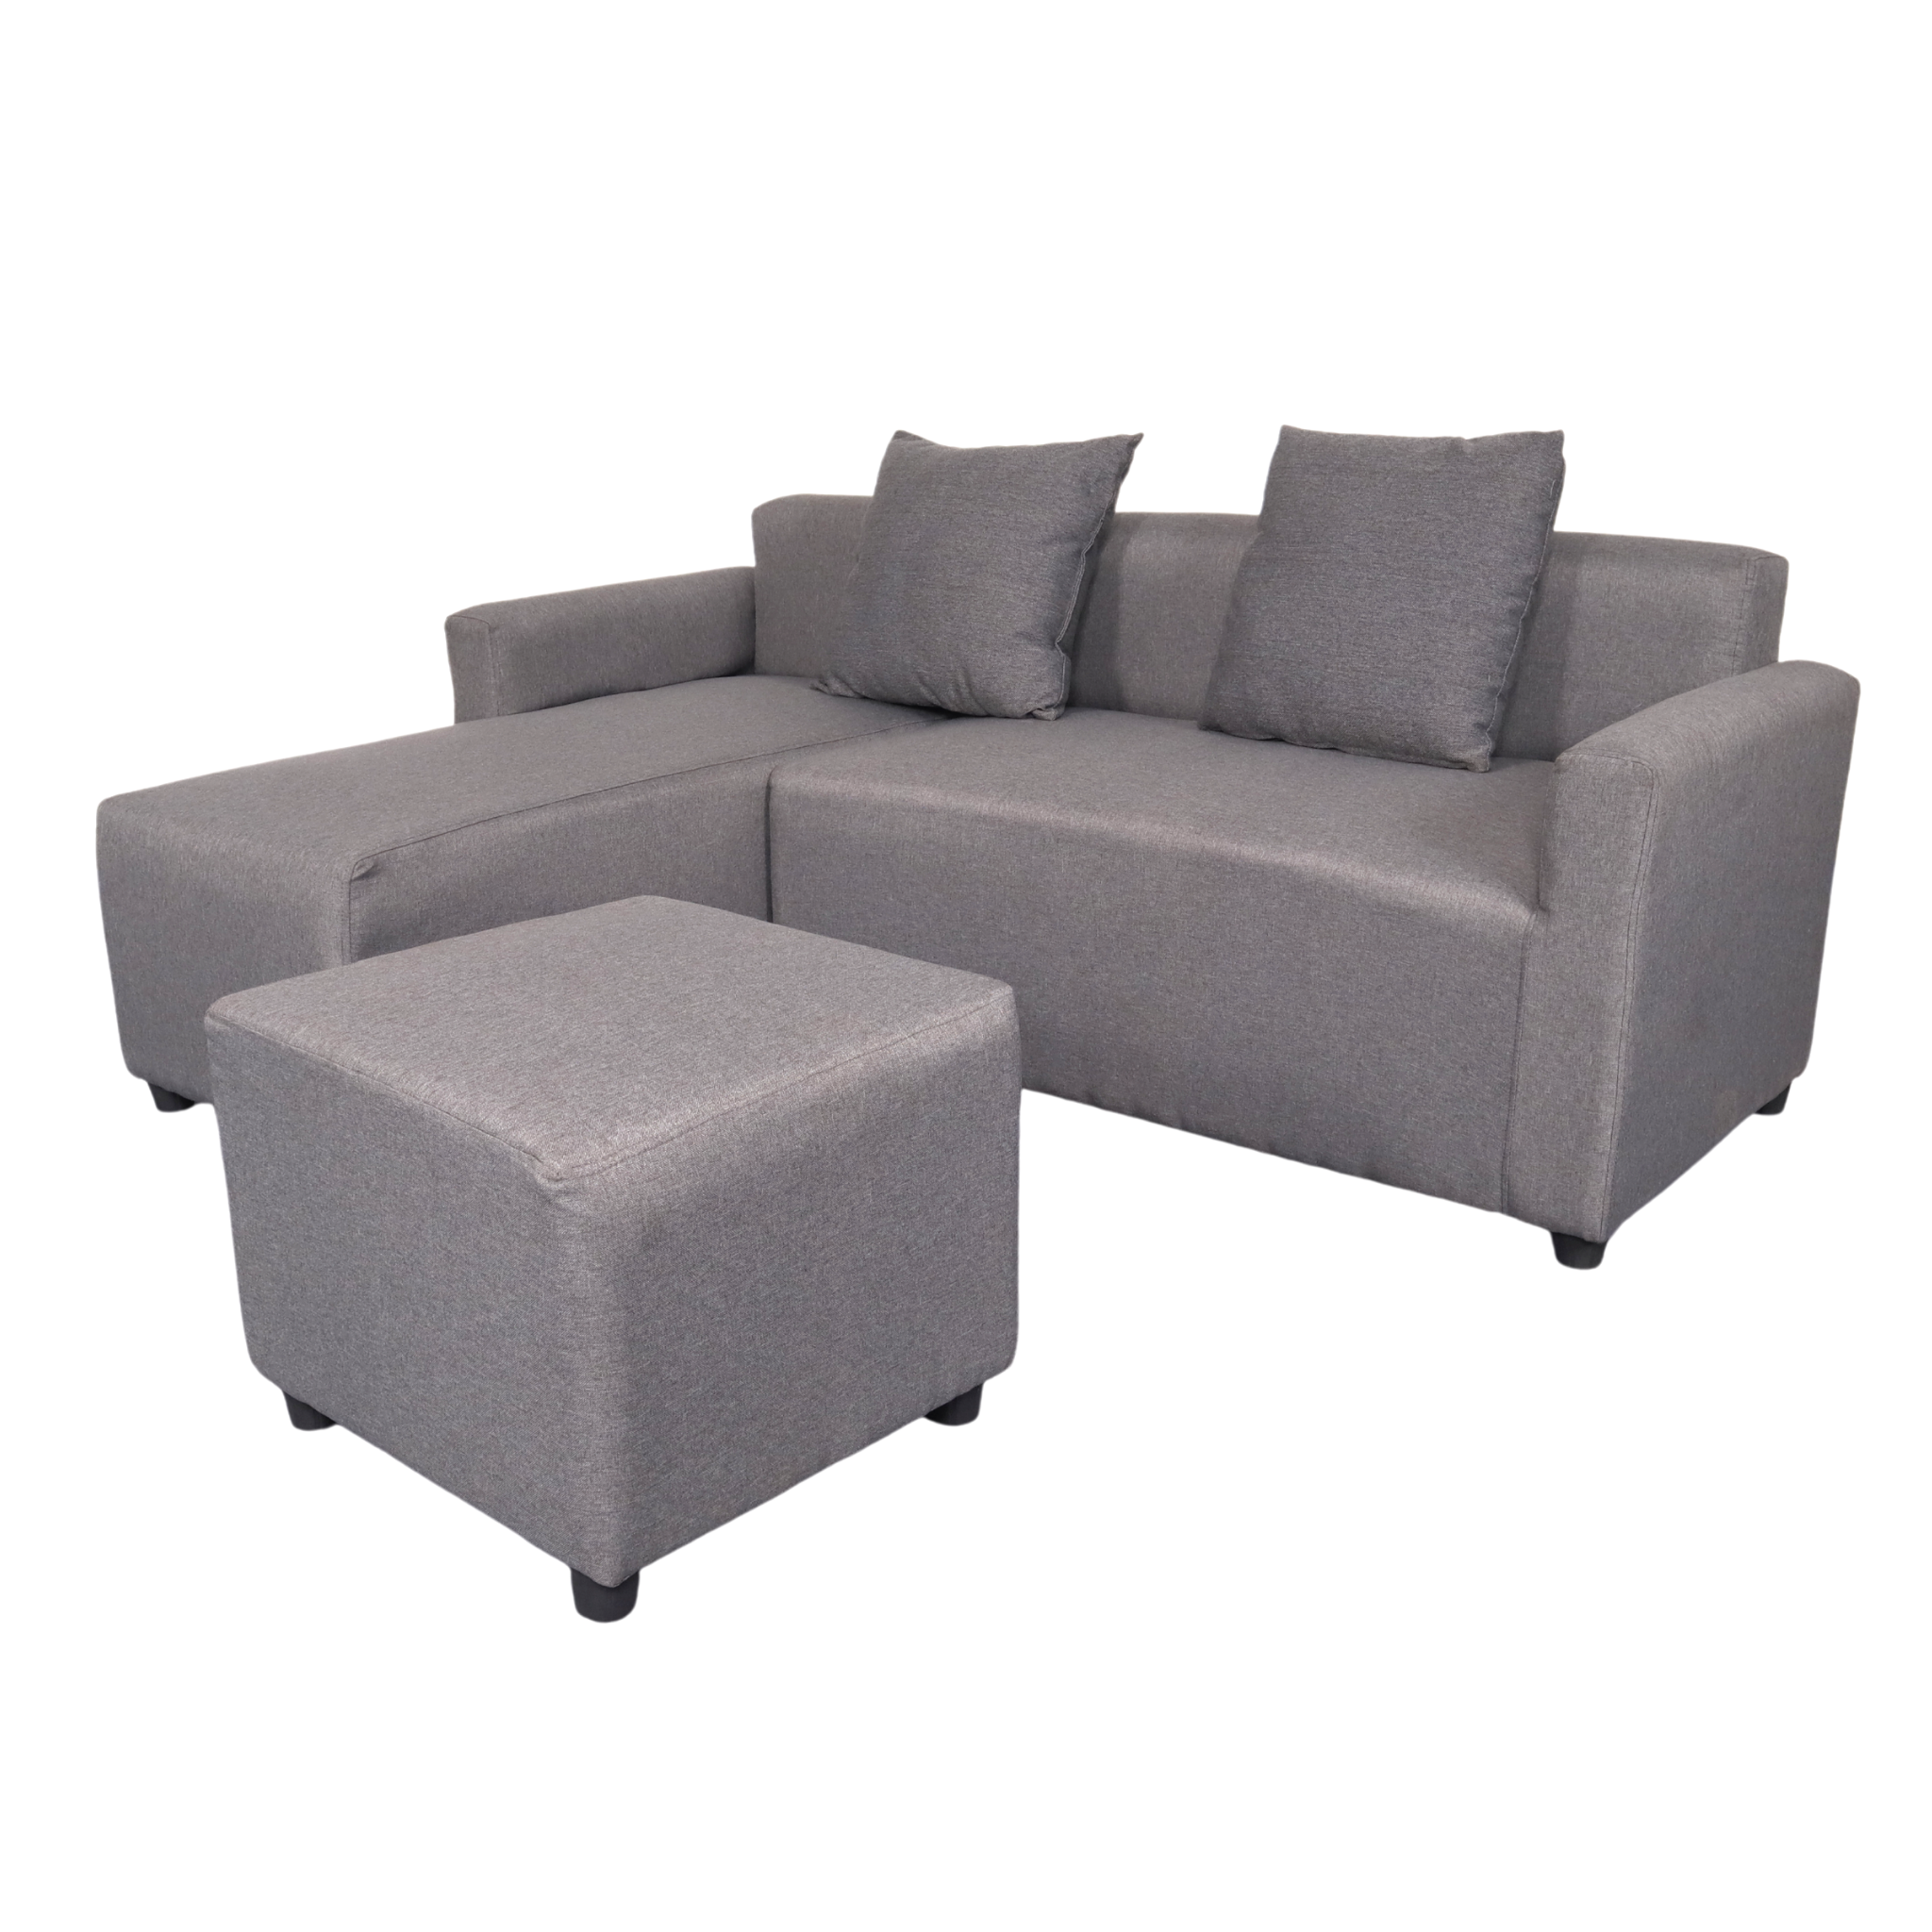 HARVEY L-Shape Fabric Sofa with Ottoman AF Home